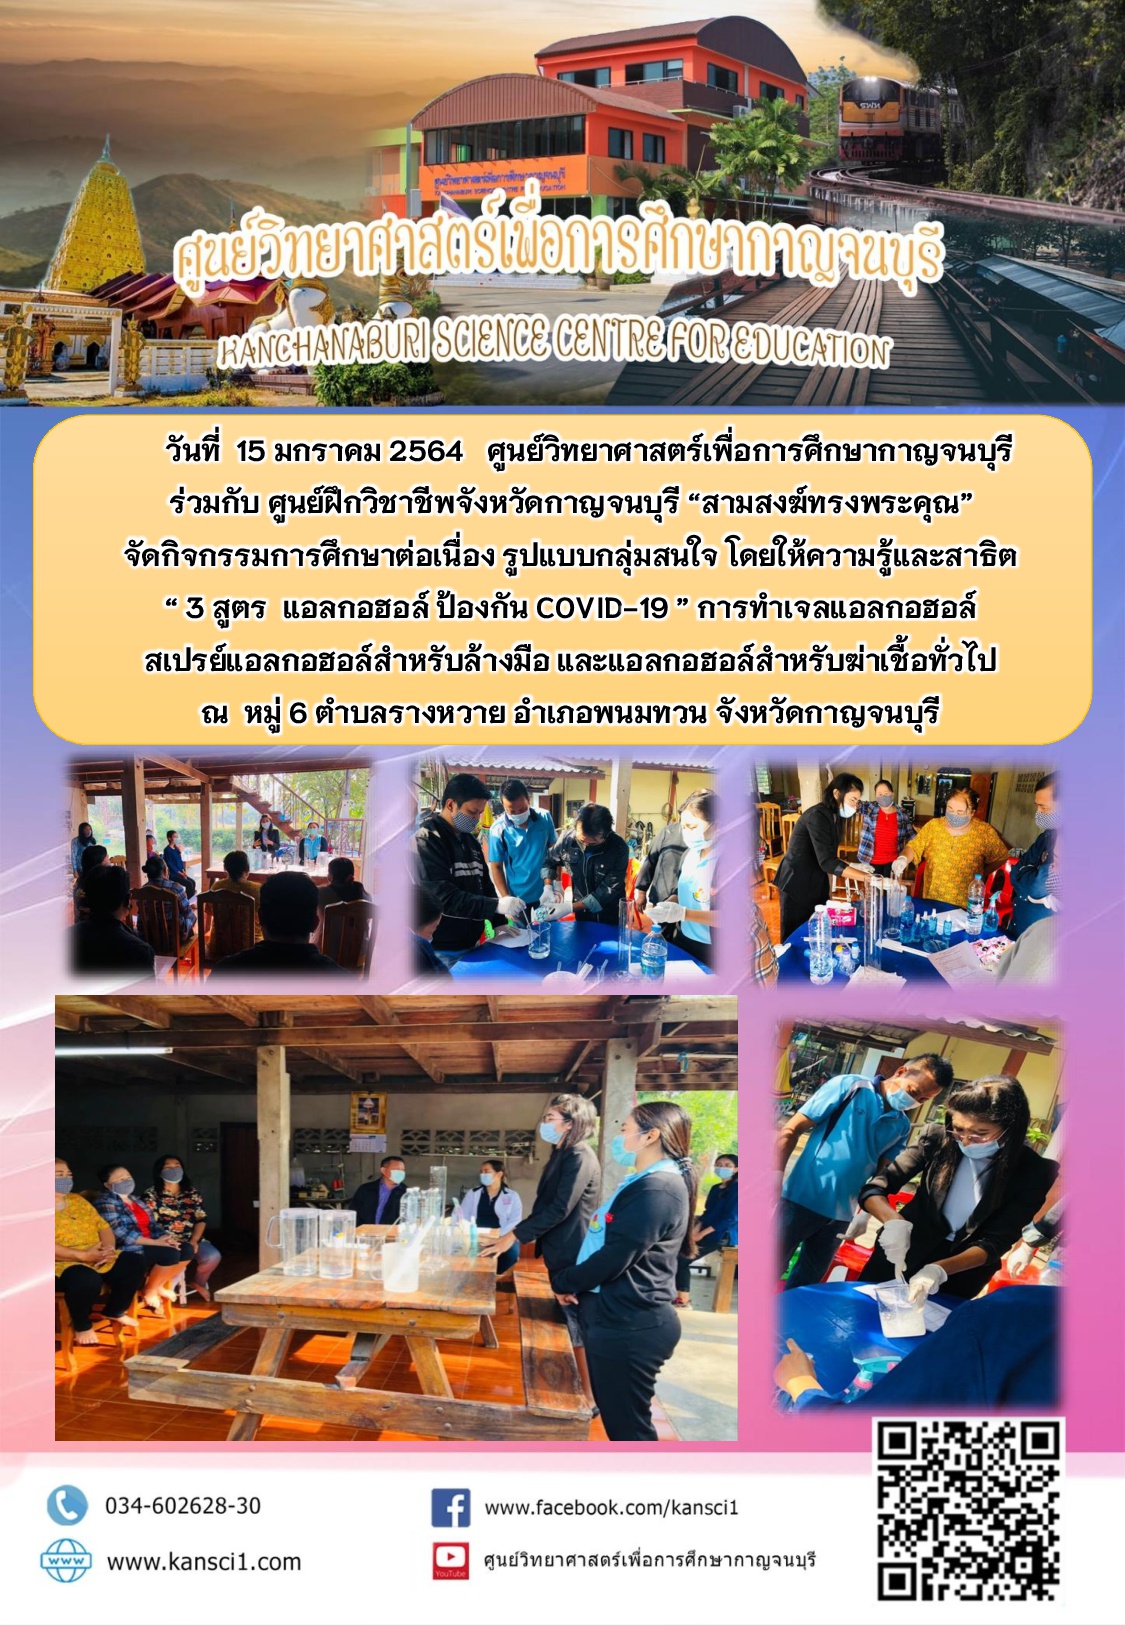 ศูนย์วิทยาศาสตร์เพื่อการศึกษากาญจนบุรี